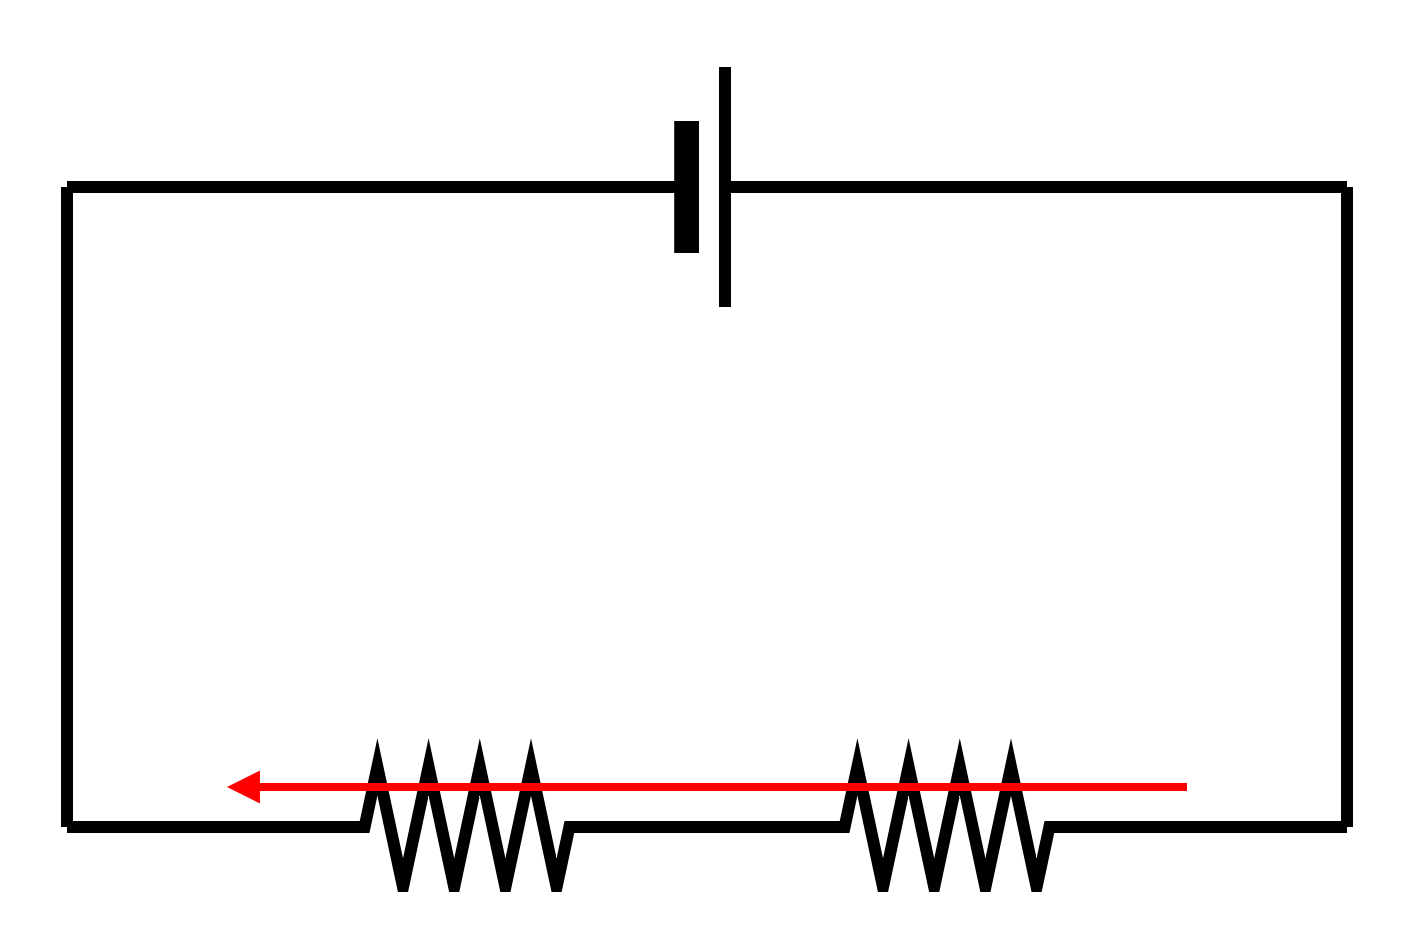 図1-2-2-1.直列接続